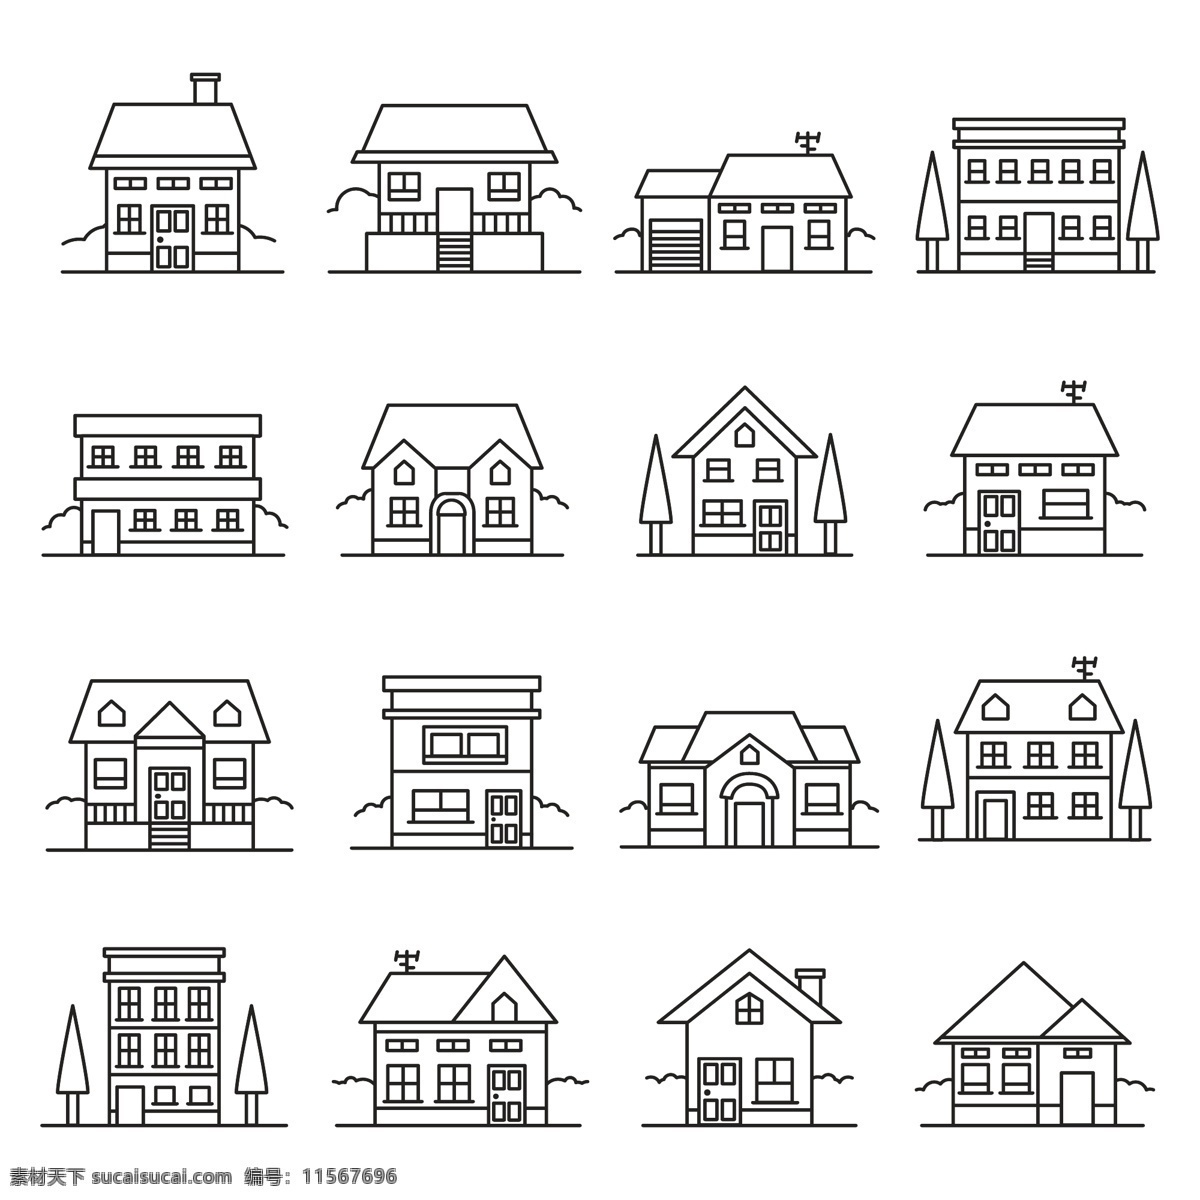 款 创意 细 线条 建筑设计 矢量图 手绘 建筑 房子 别墅 插画 黑白